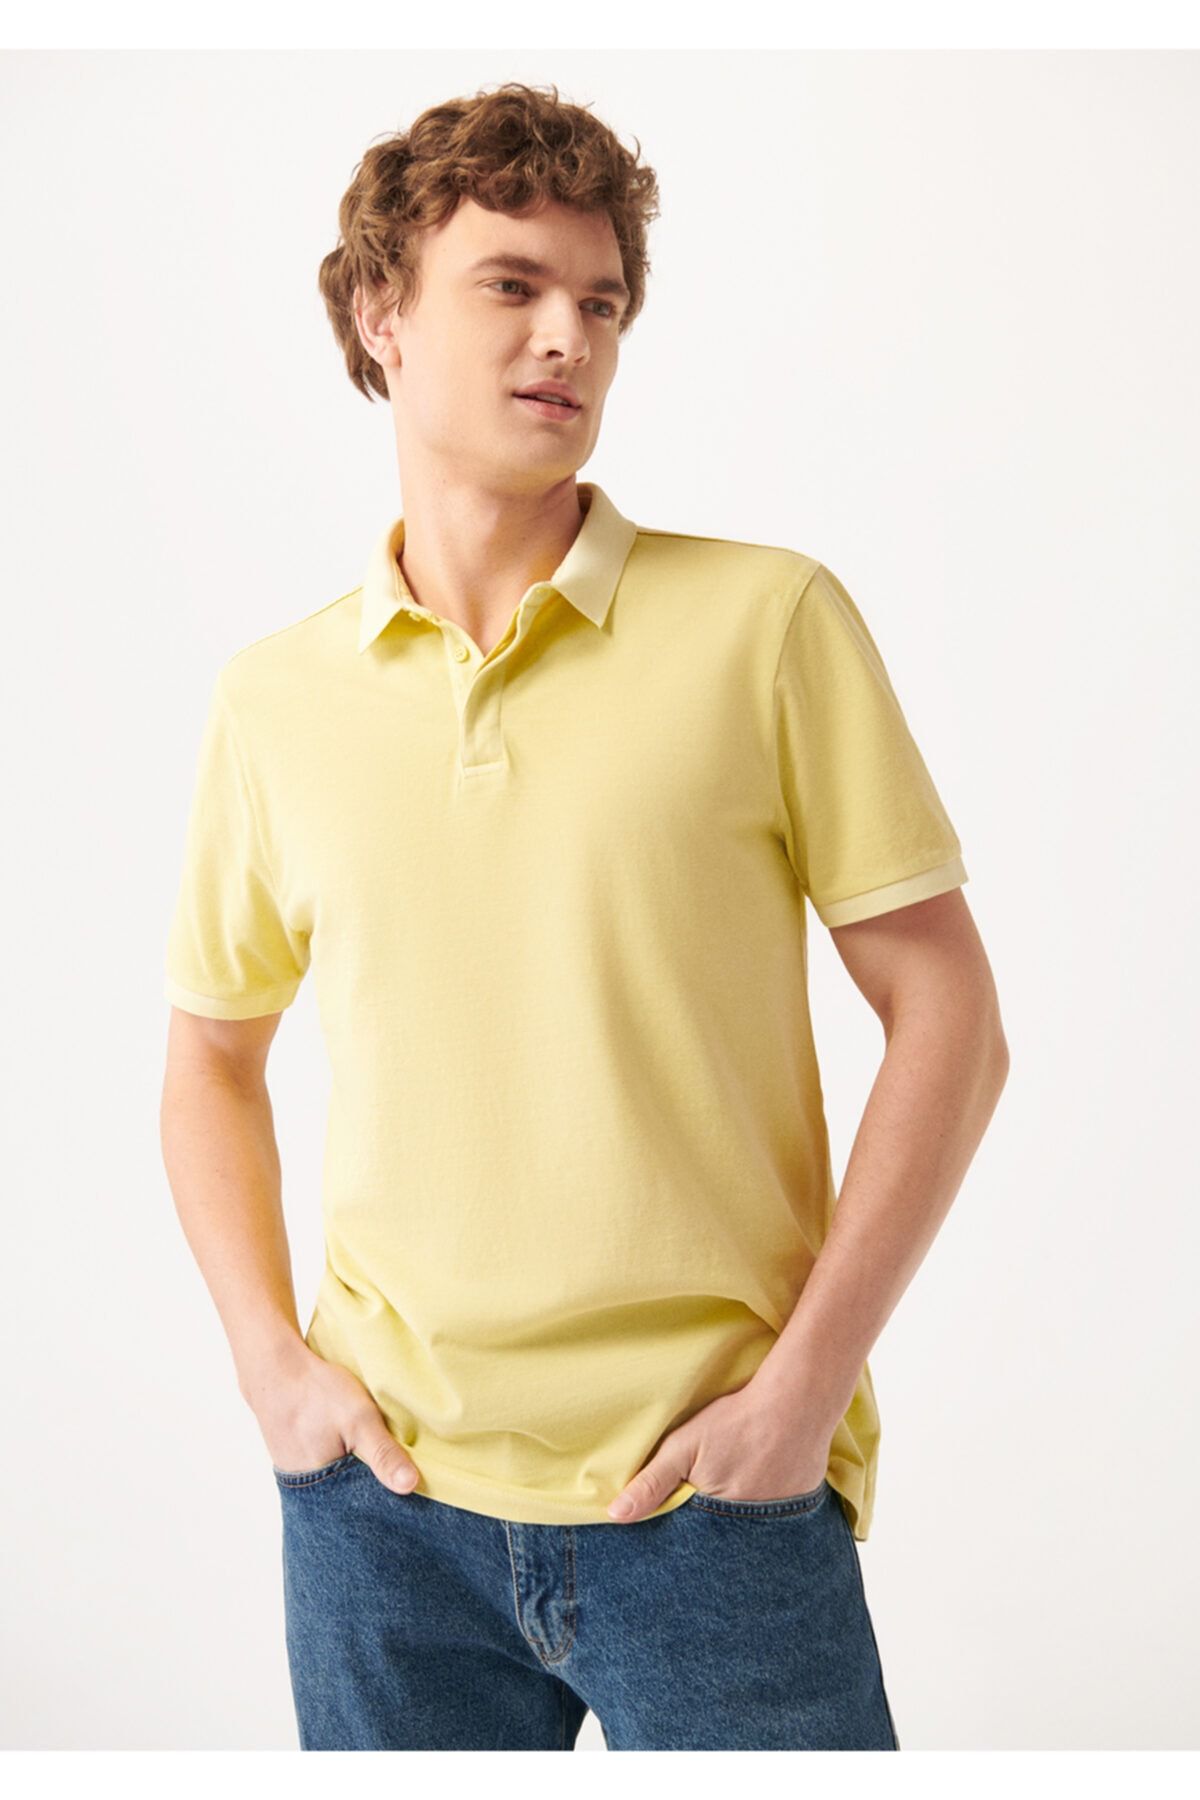 Mavi Sarı Polo Tişört Slim Fit / Dar Kesim 0610079-71285